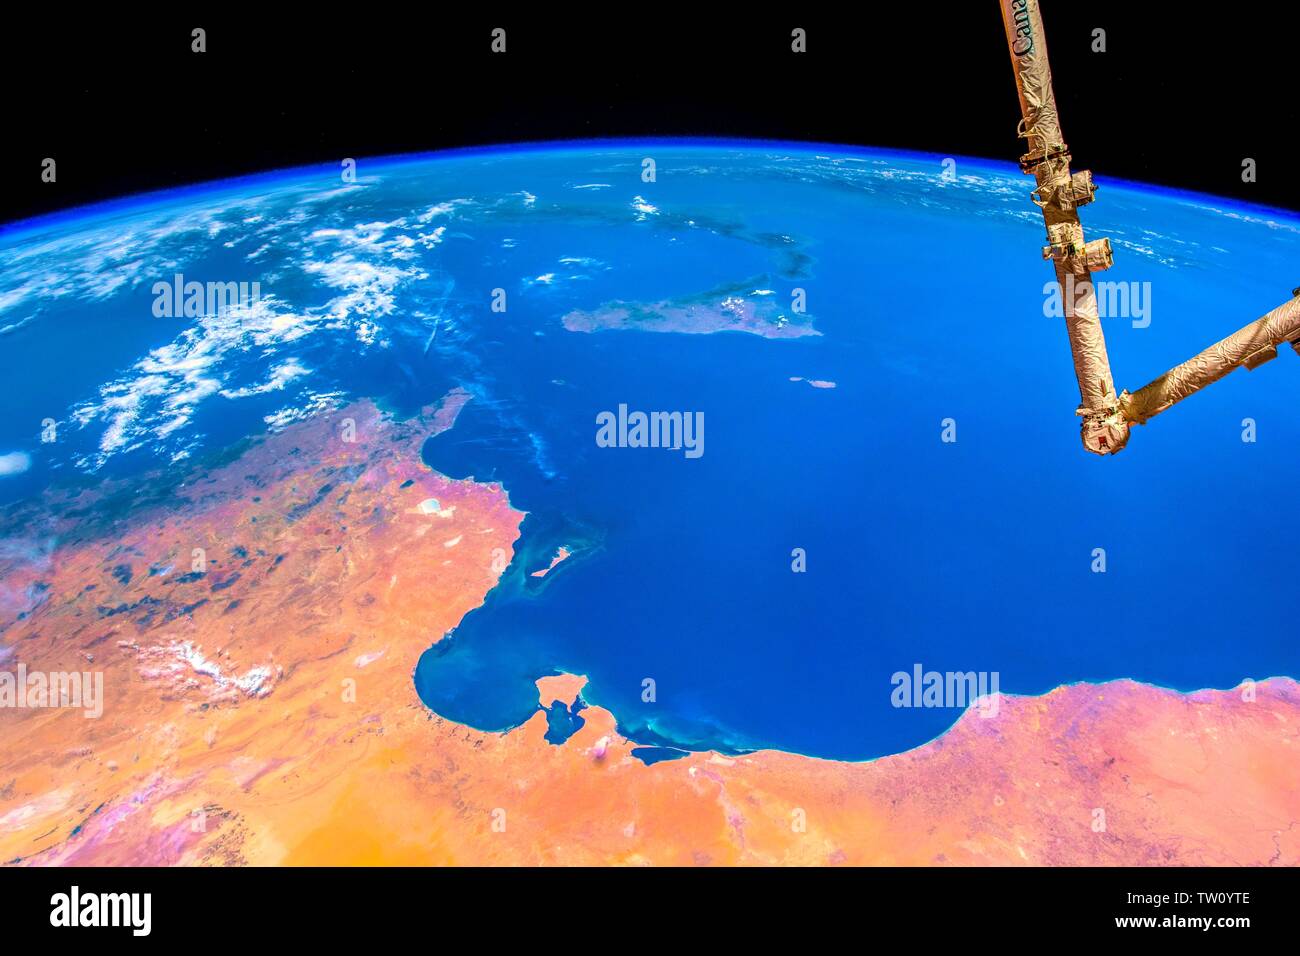 Colori brillanti crosta del nostro pianeta. La bellezza della natura del nostro pianeta terra visto dalla Stazione Spaziale Internazionale (ISS). L'immagine è una publi Foto Stock